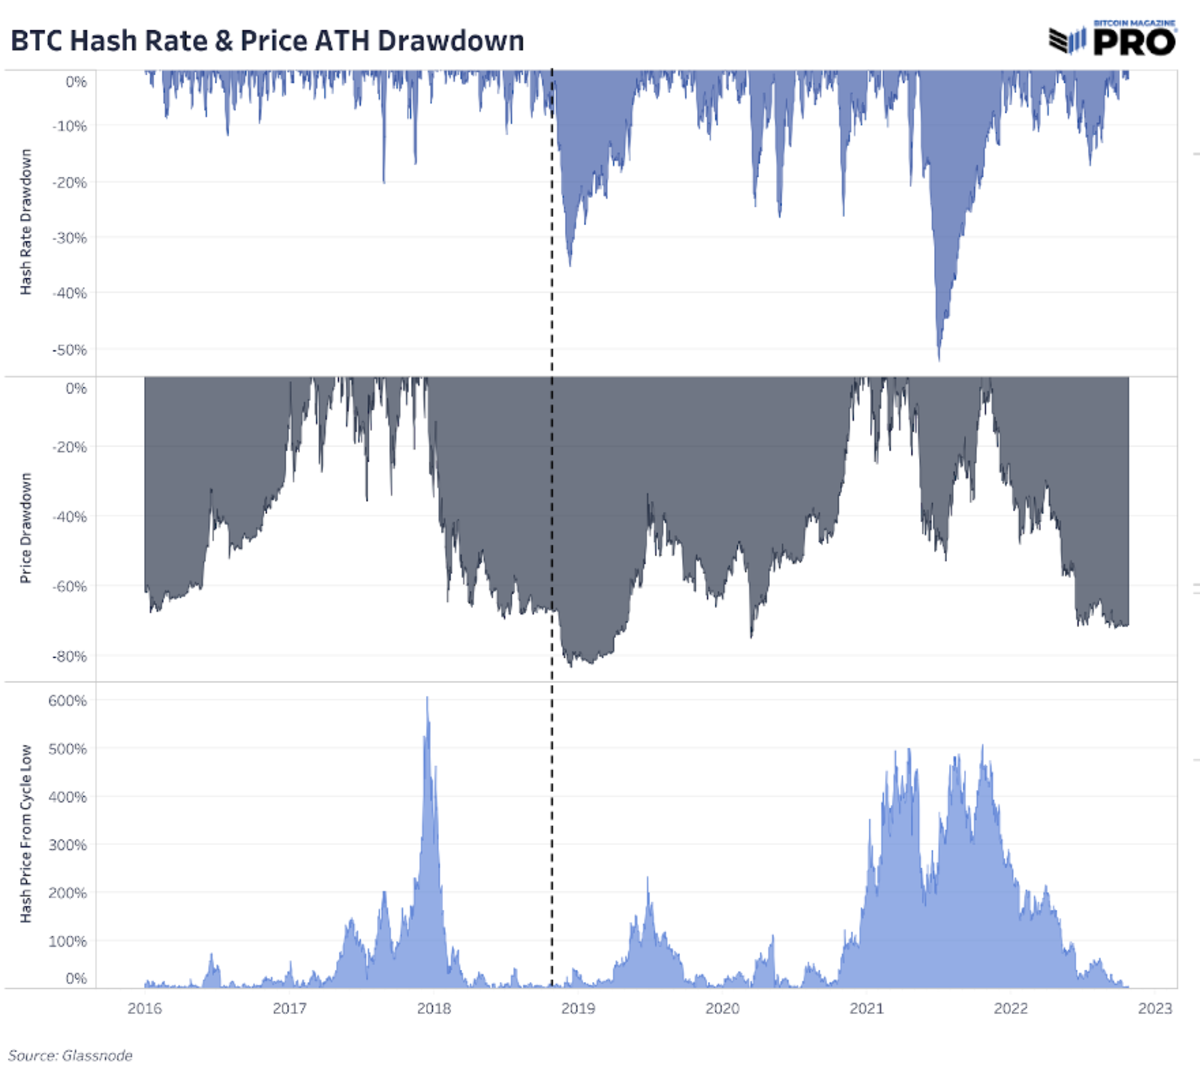 L’industria mineraria di bitcoin è sotto pressione poiché il prezzo dell’hash raggiunge nuovi minimi, l’hash rate raggiunge nuovi massimi storici e l’aggiustamento della difficoltà continua a salire.